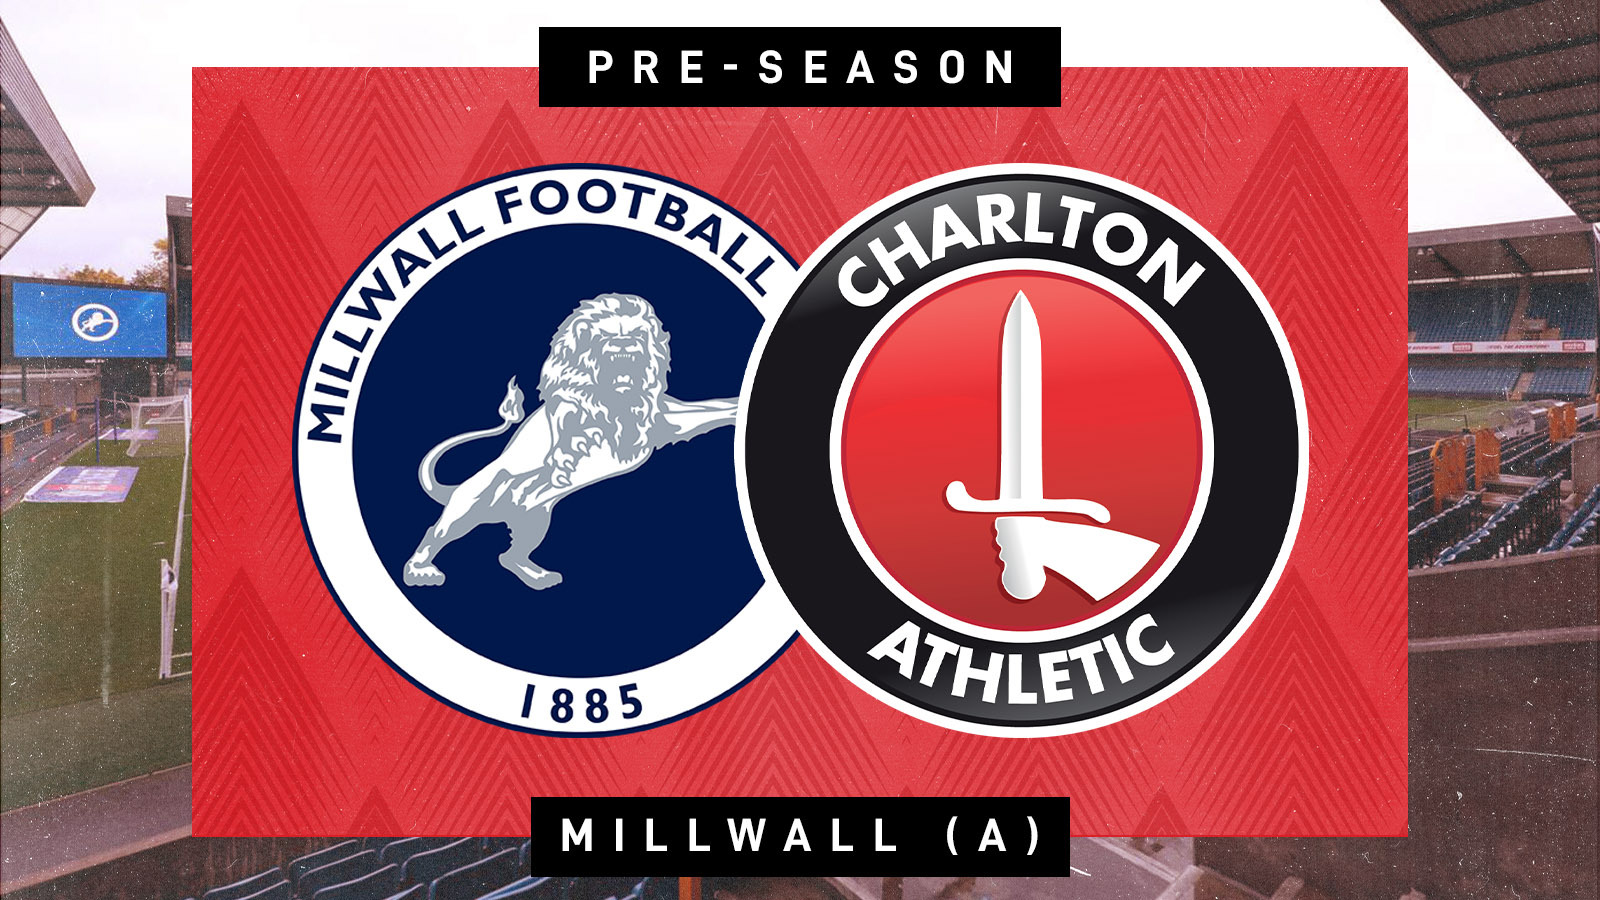 Millwall friendly